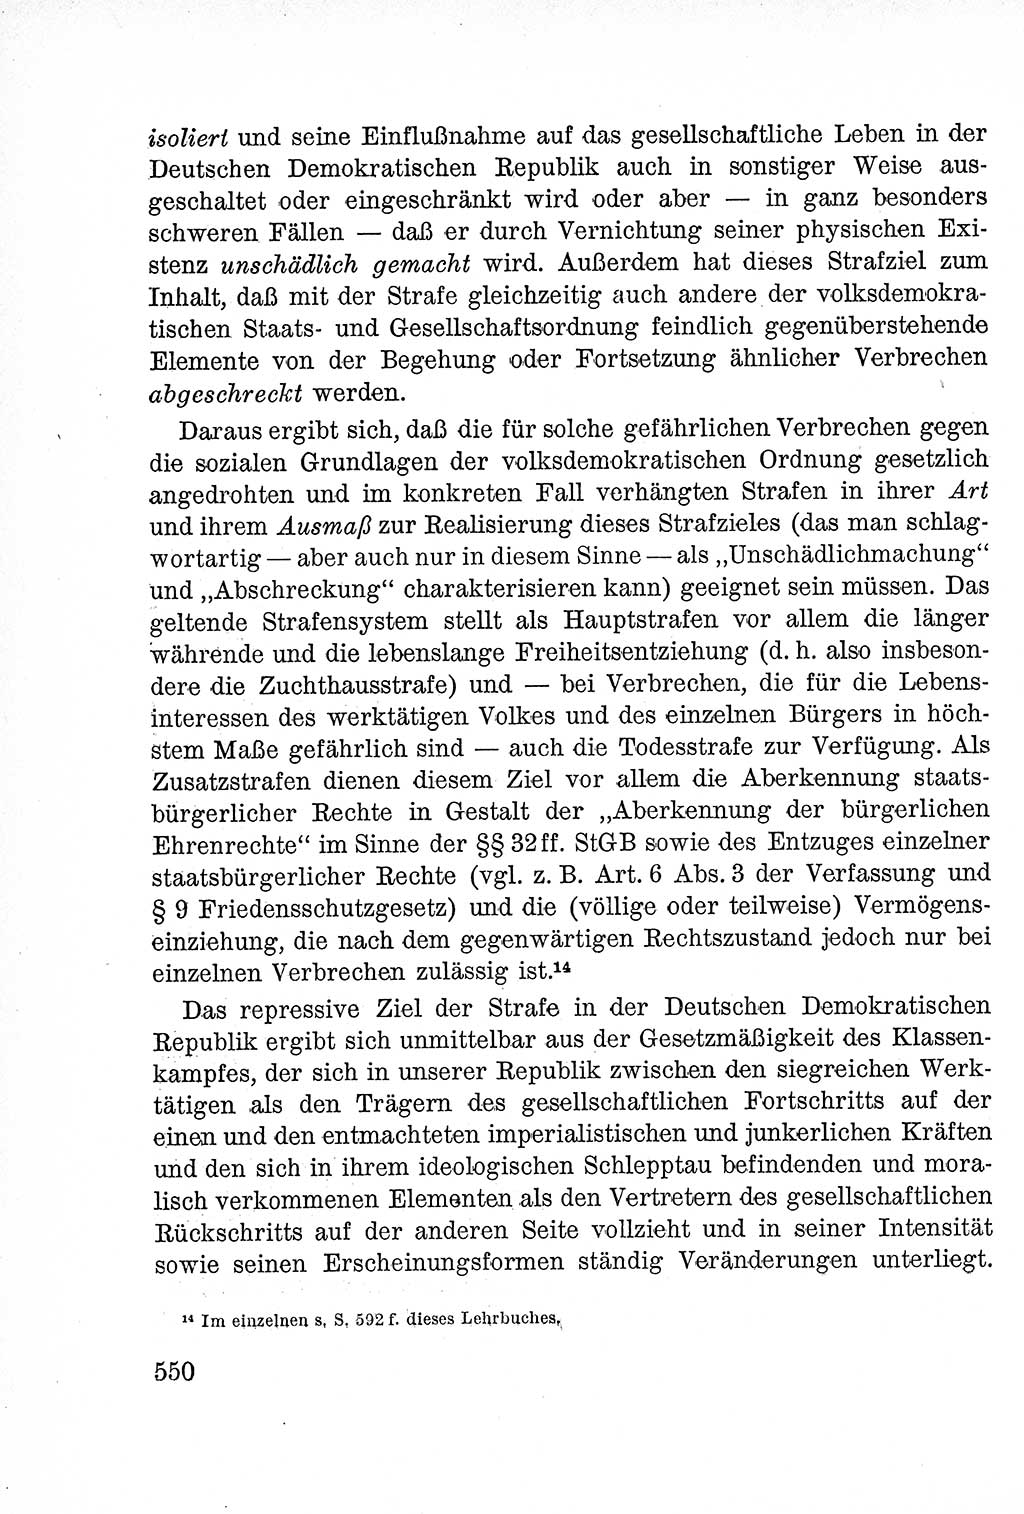 Lehrbuch des Strafrechts der Deutschen Demokratischen Republik (DDR), Allgemeiner Teil 1957, Seite 550 (Lb. Strafr. DDR AT 1957, S. 550)